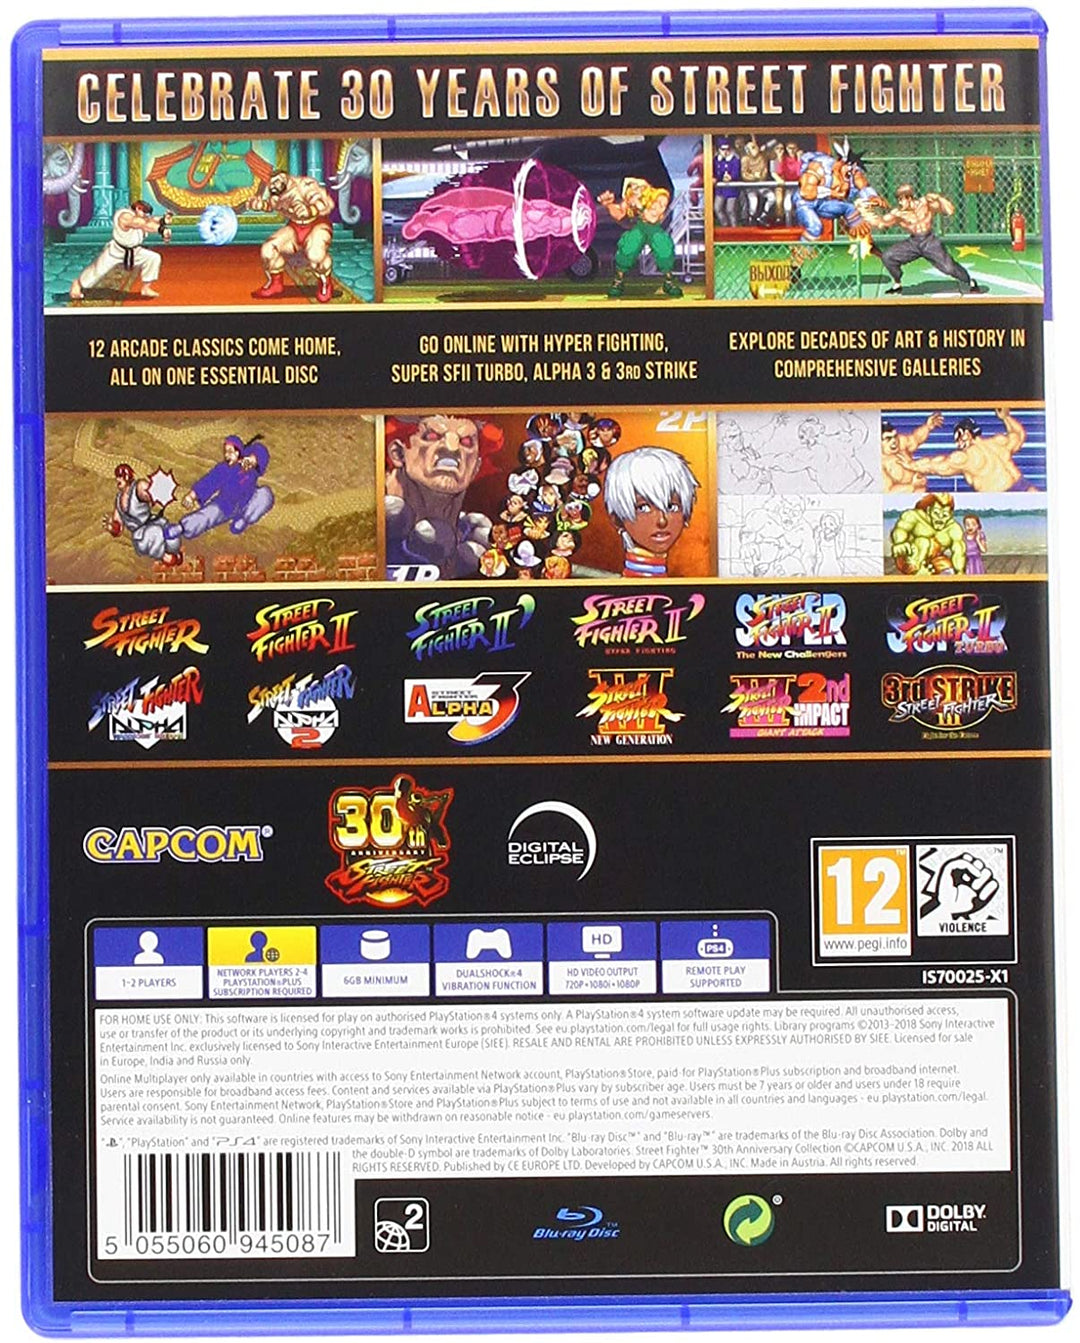 Street Fighter-Kollektion zum 30-jährigen Jubiläum (PS4)